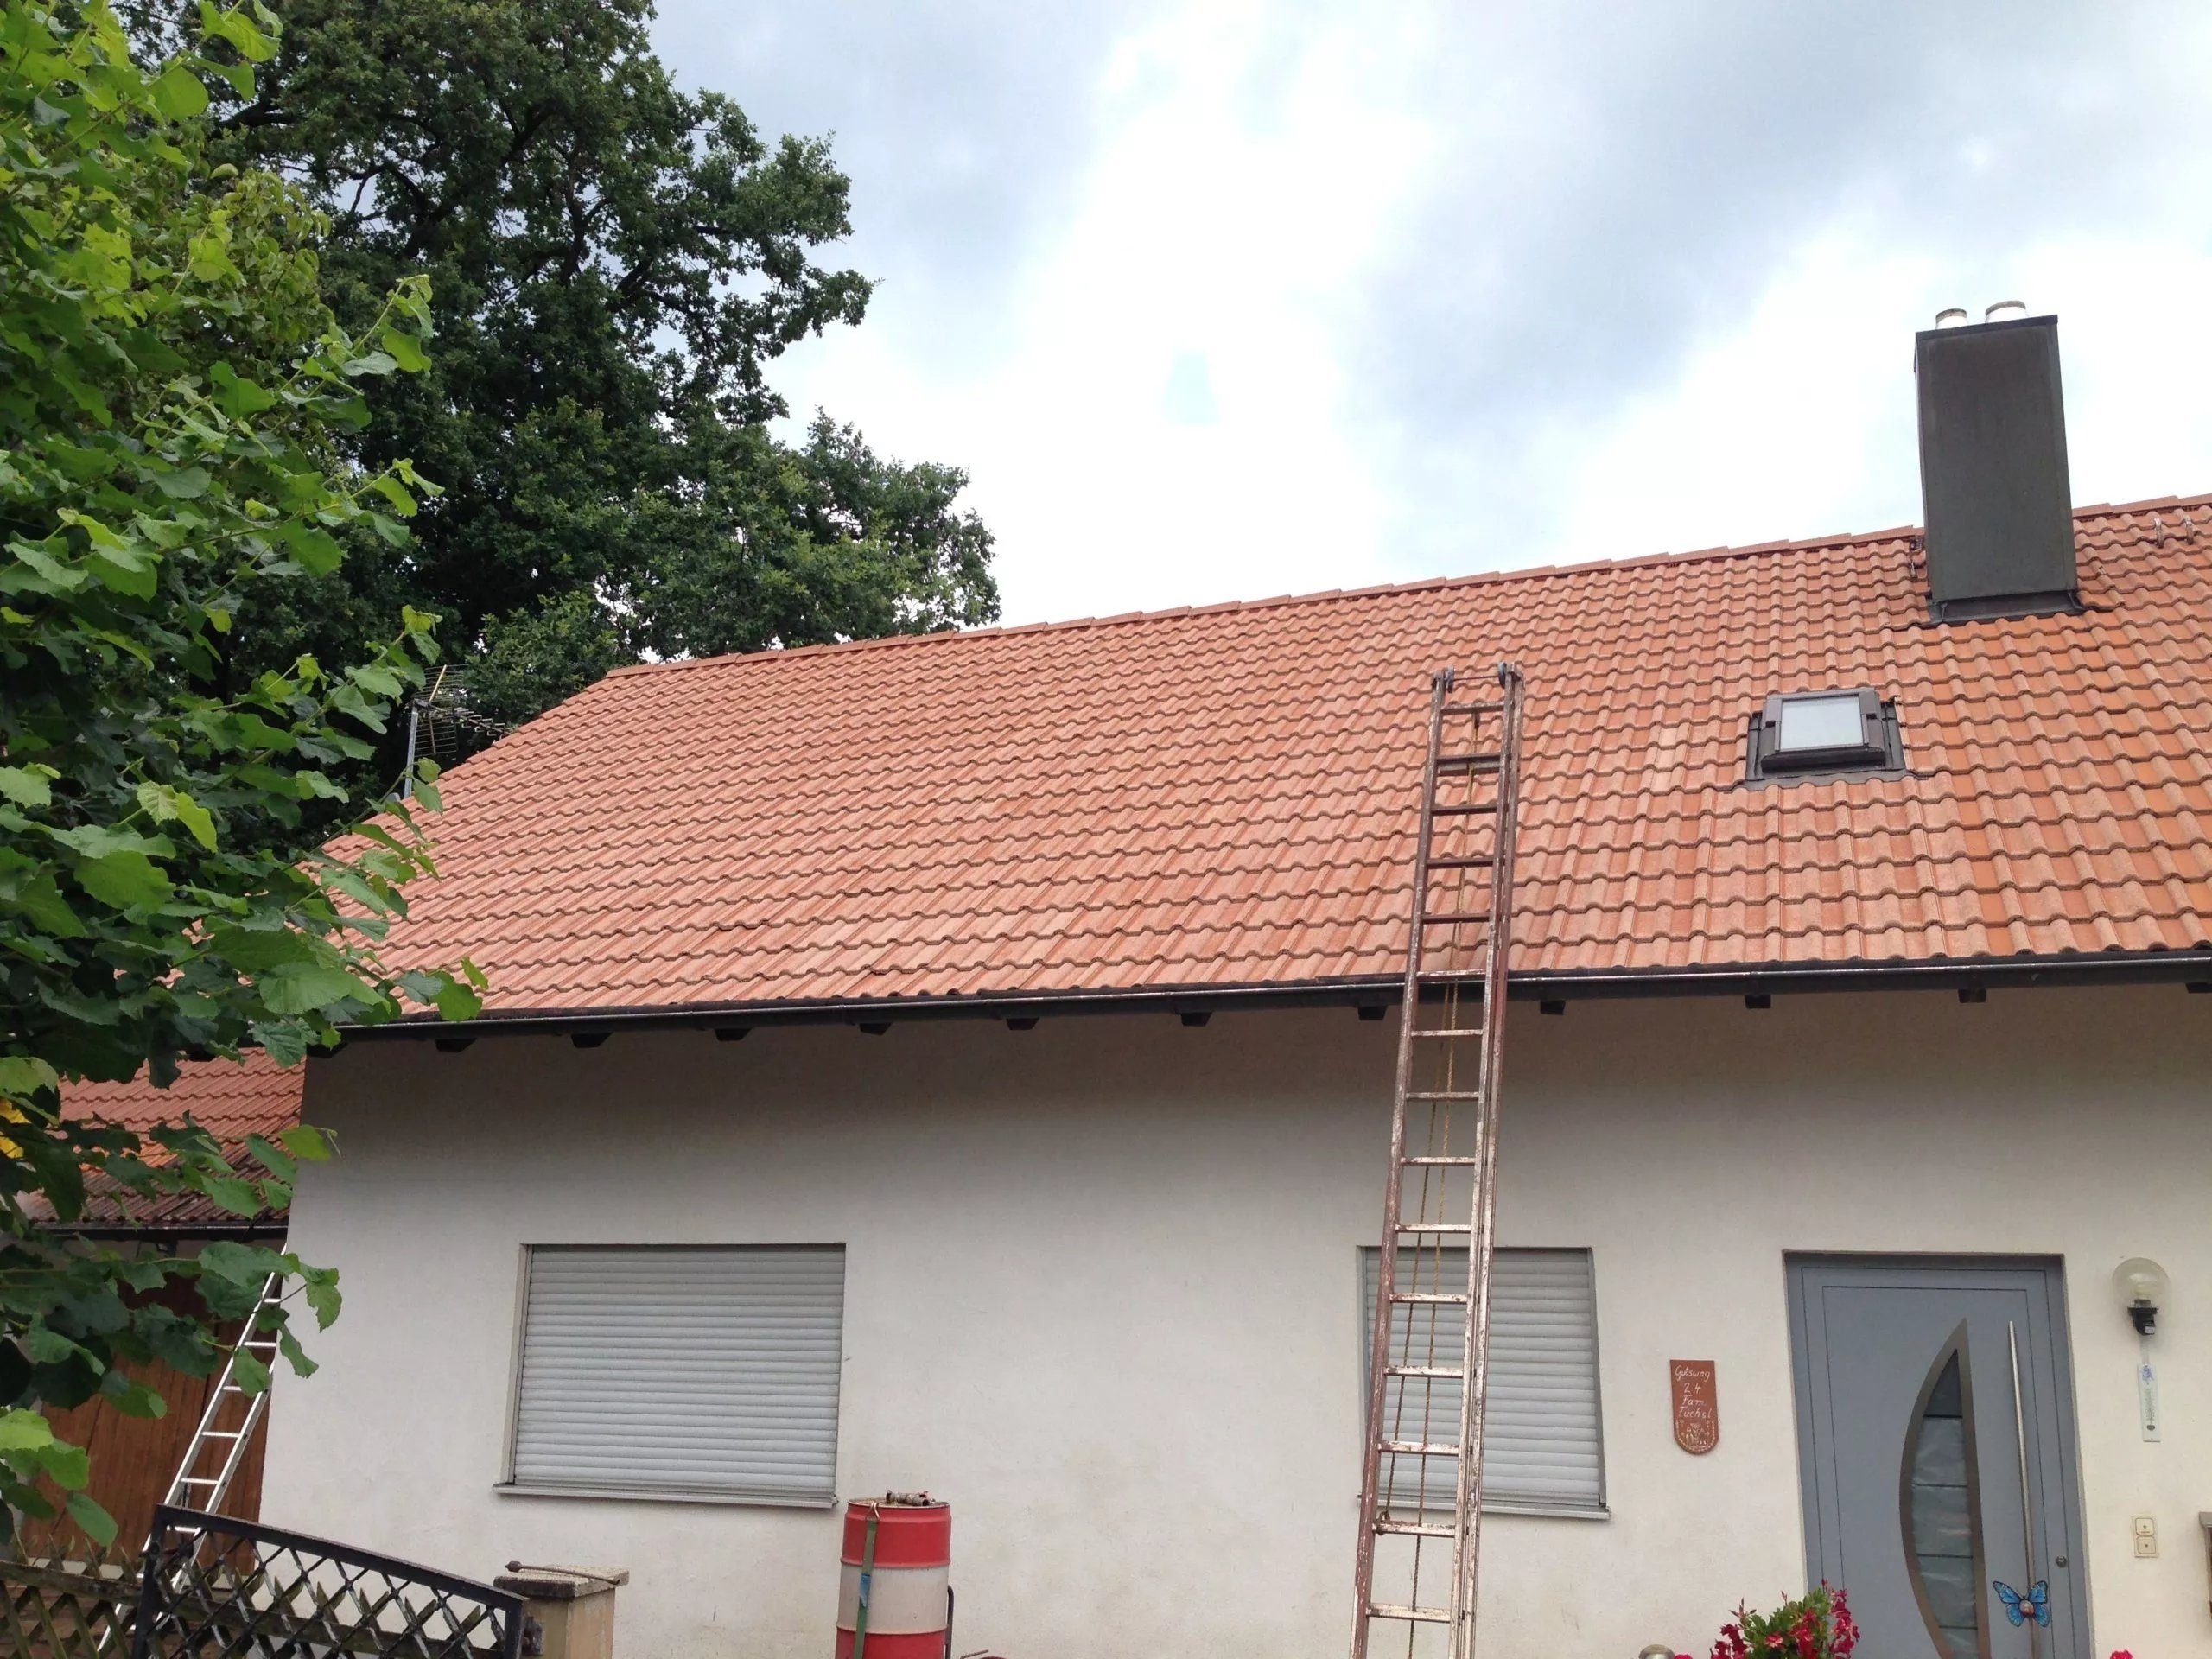 Dachreinigung mit Dachbeschichtung 5 betondachsteine nach der reinigung scaled